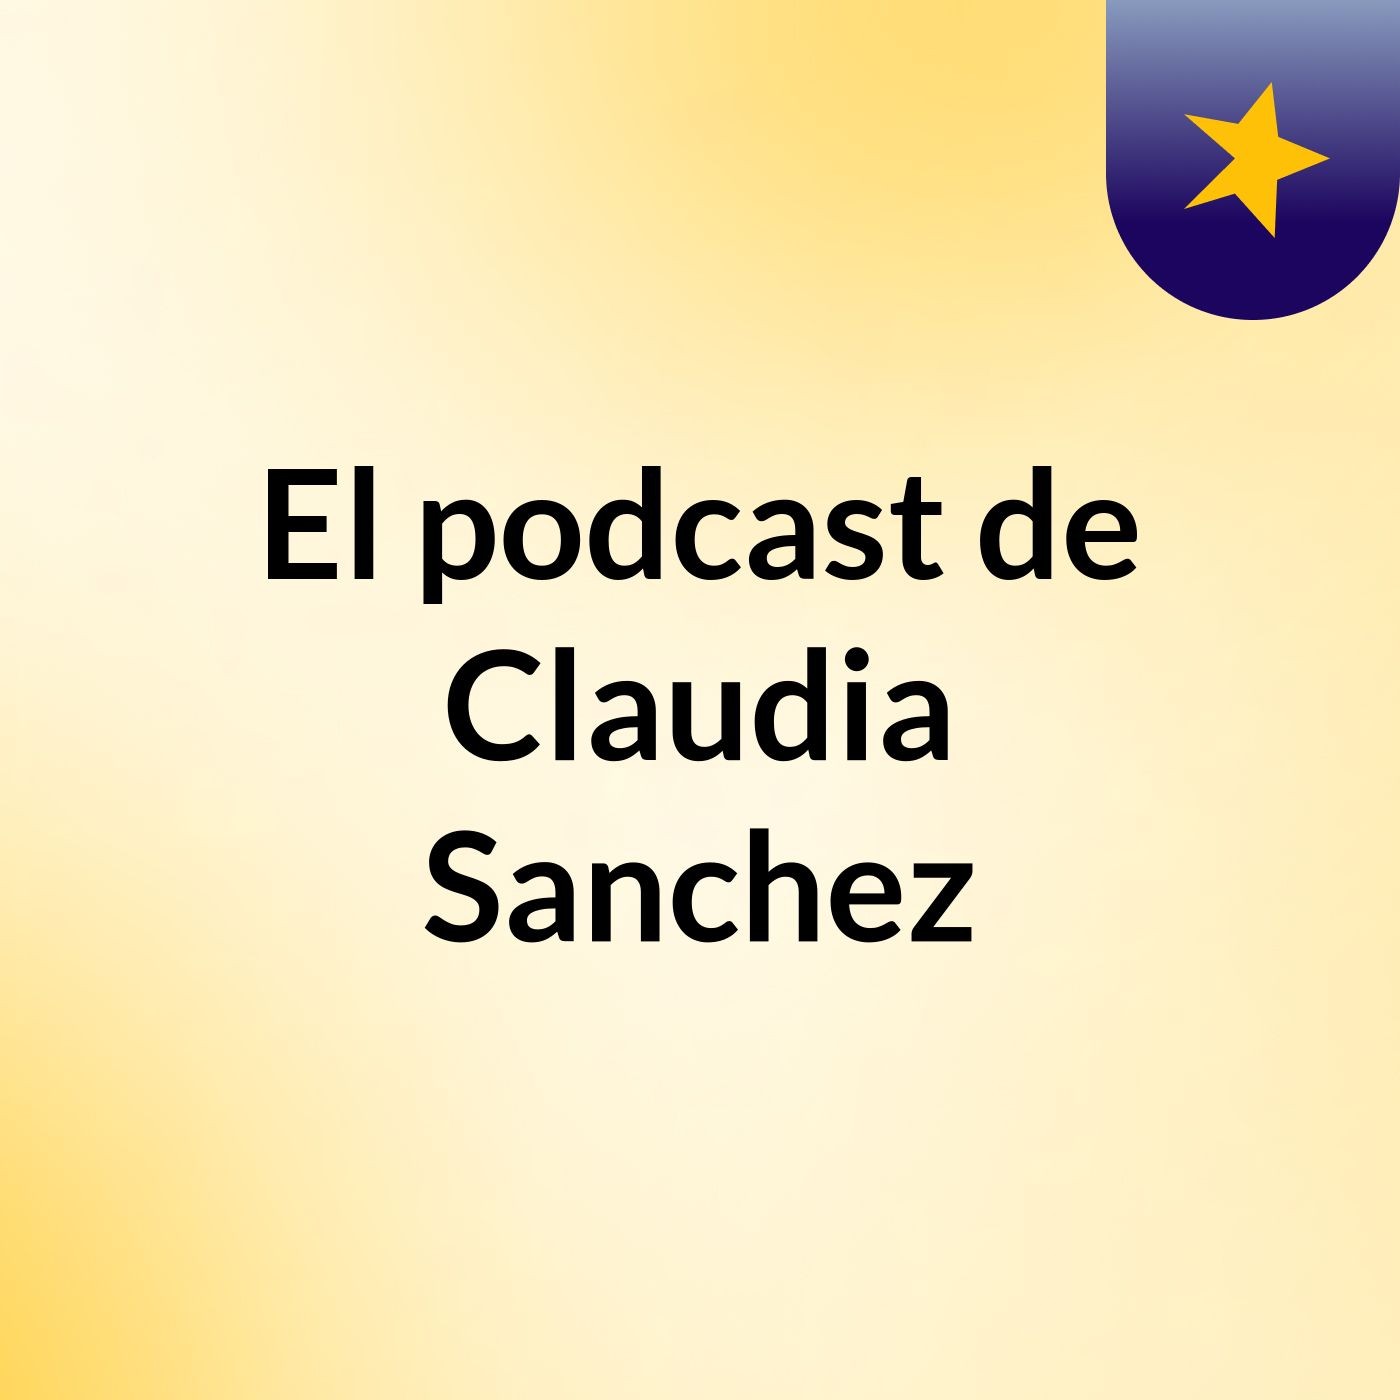 El podcast de Claudia Sanchez